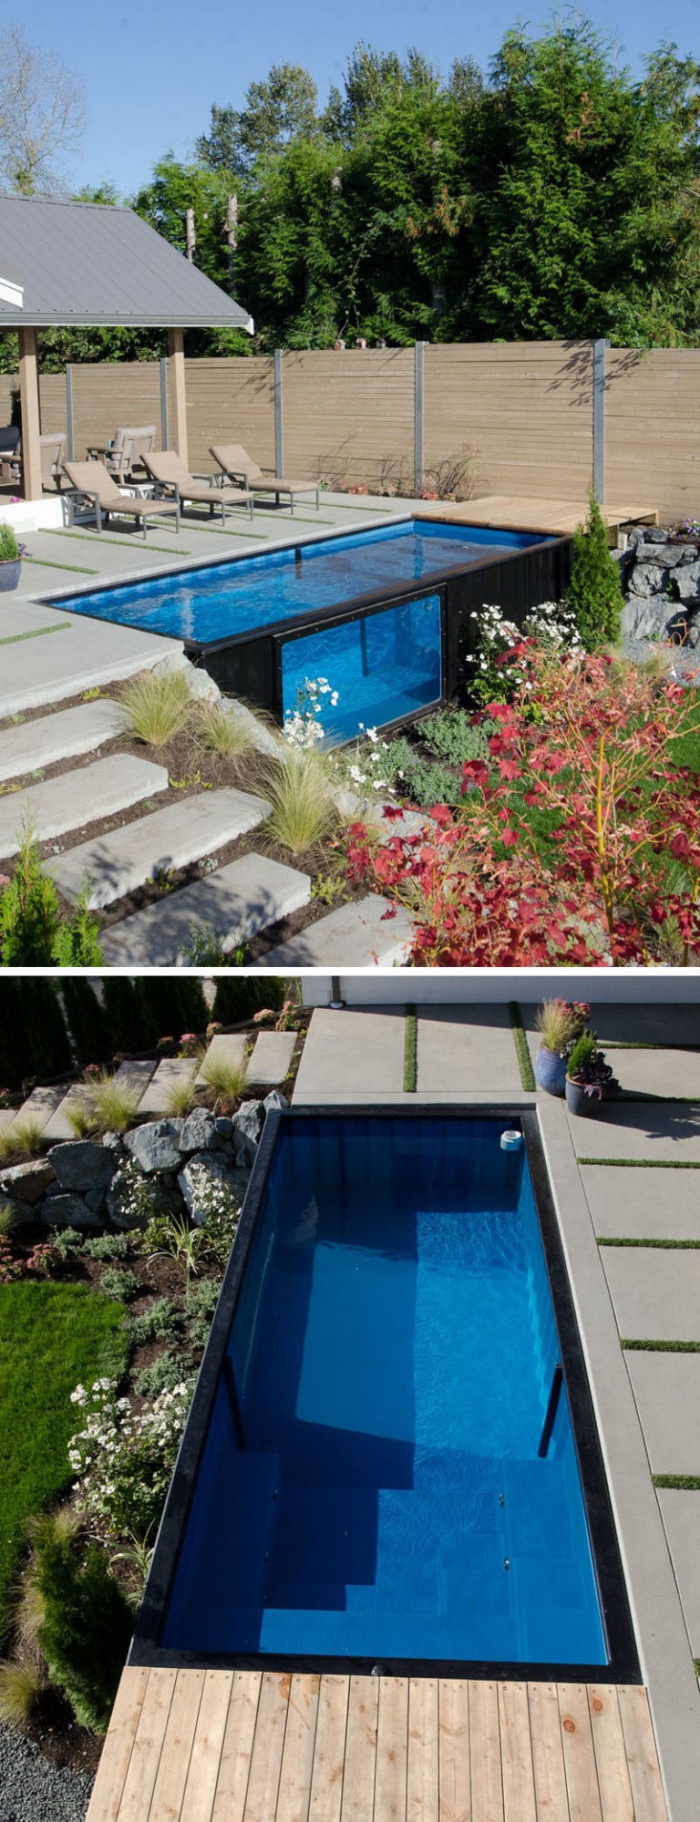 Những mẫu bể bơi container dành cho nhà có sân vườn nhỏ